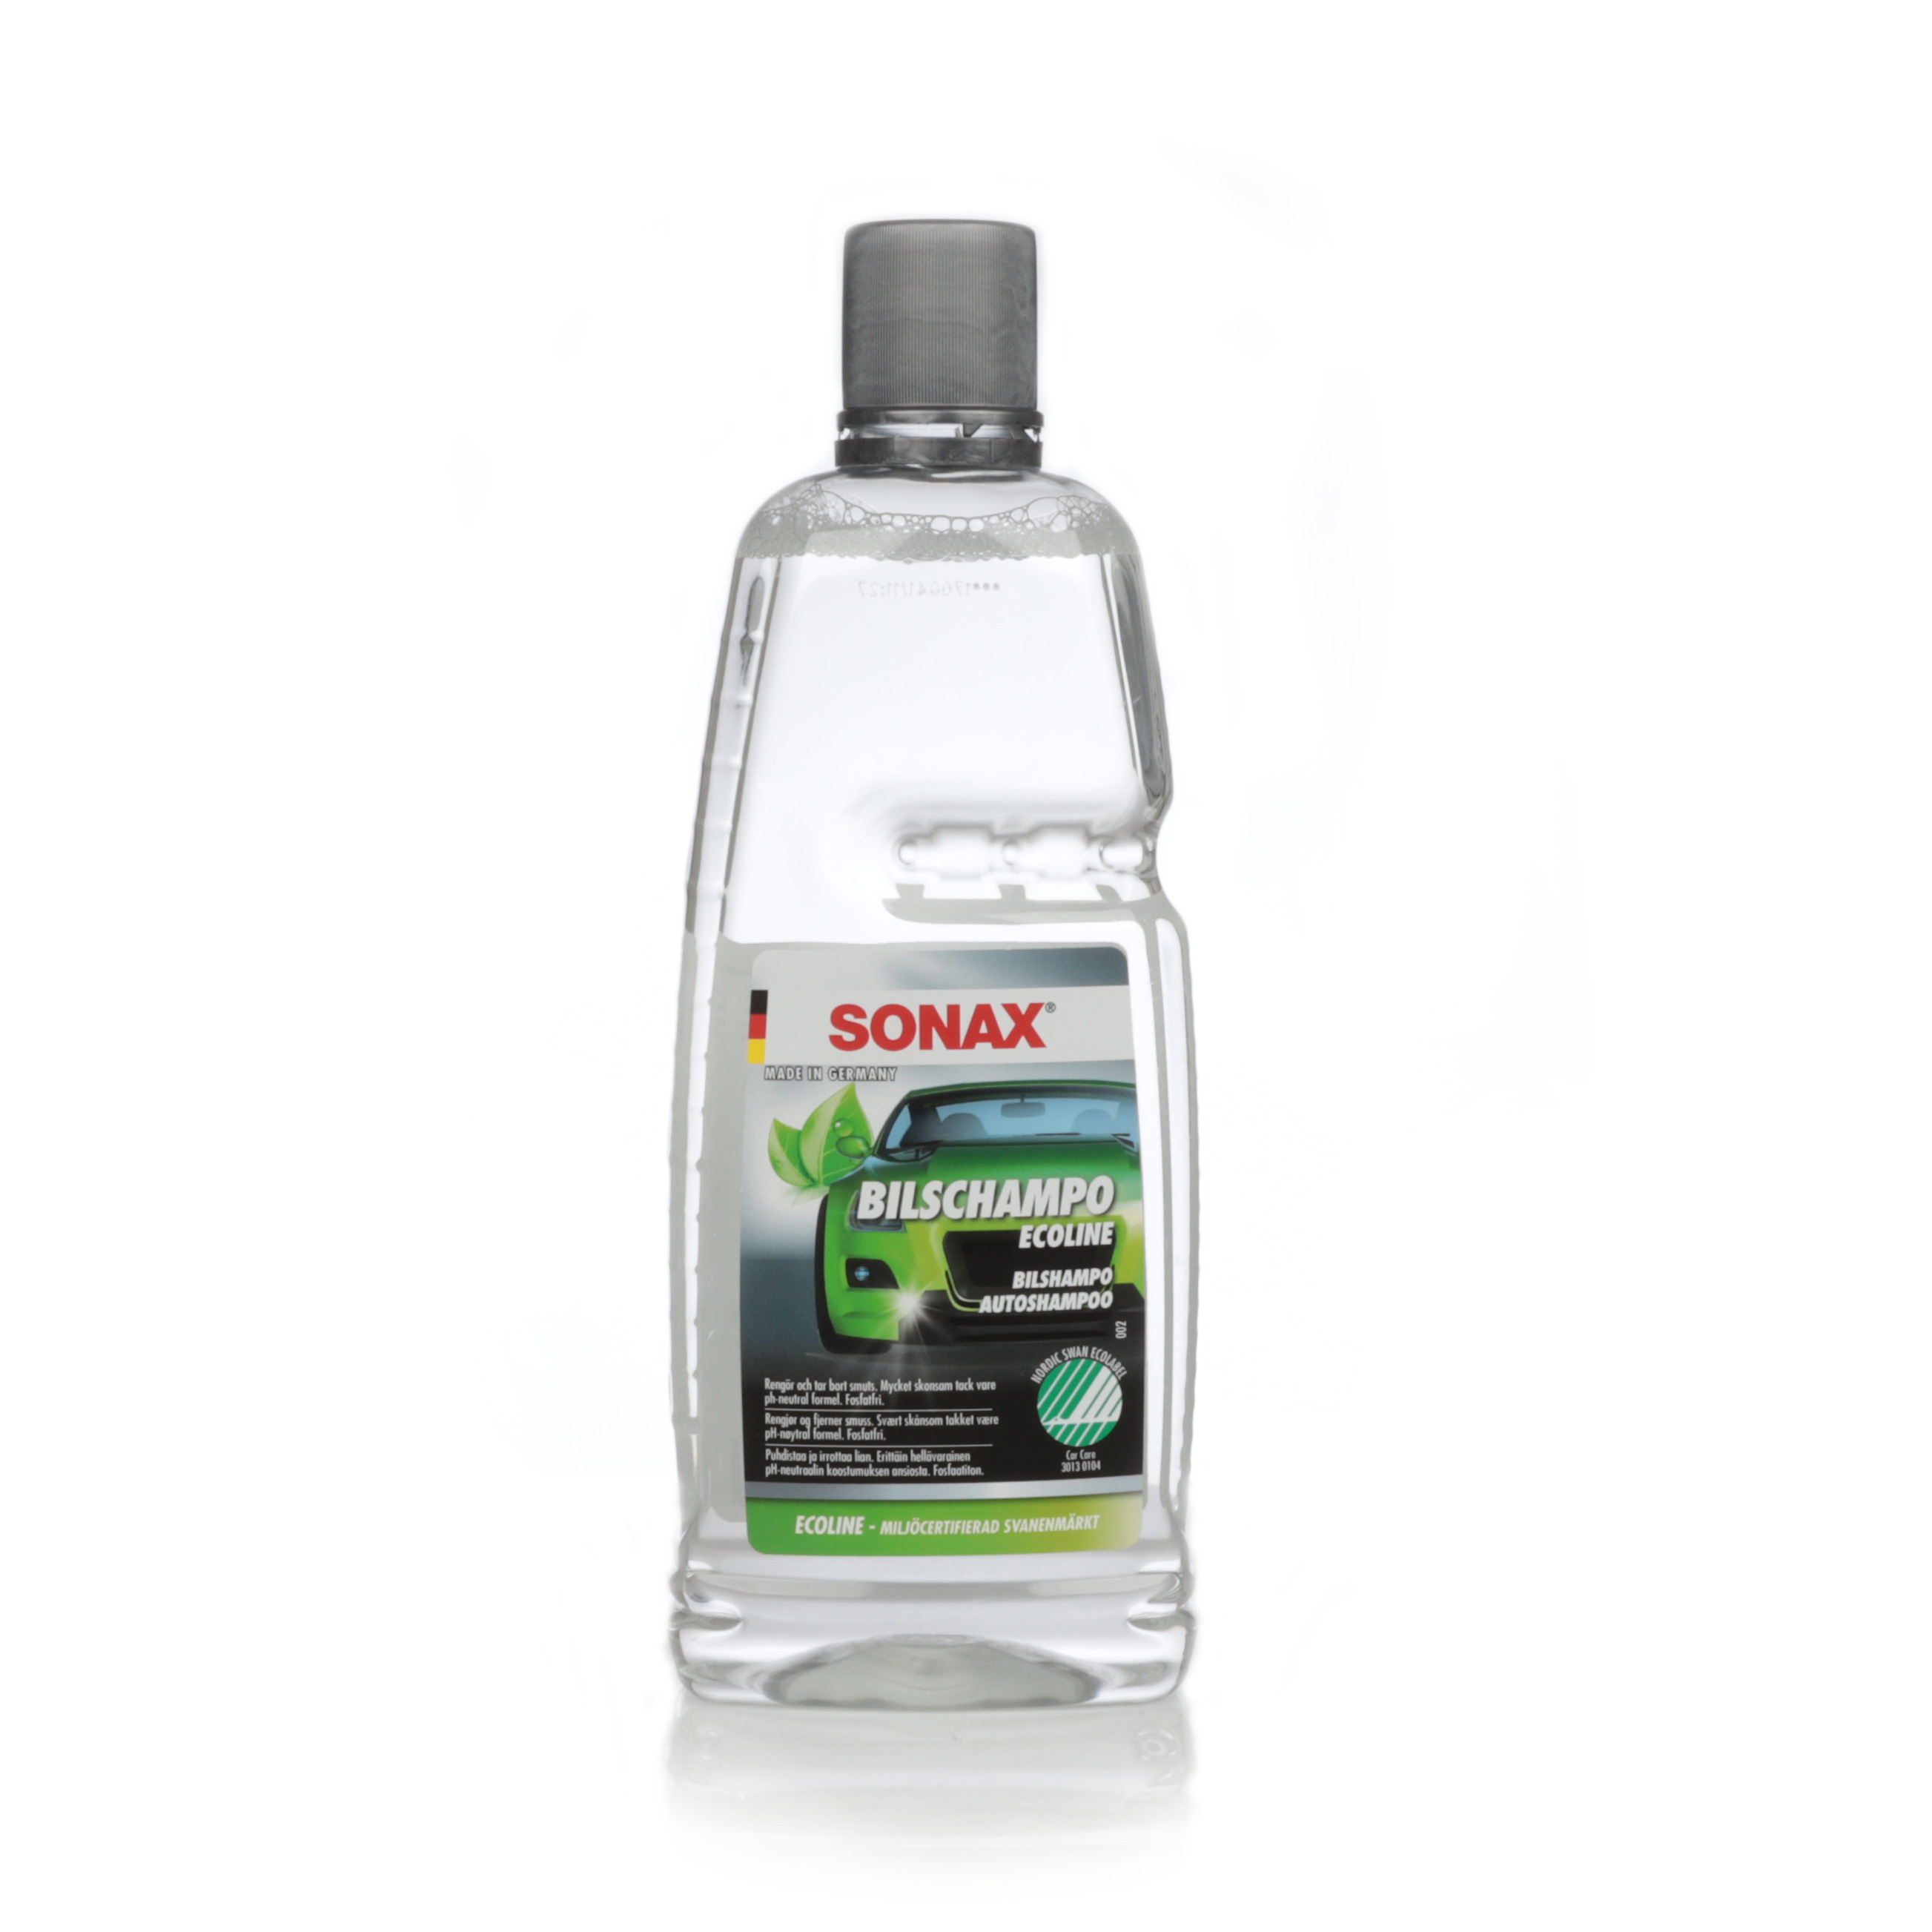 Bilschampo Sonax Ecoline, 1000 ml